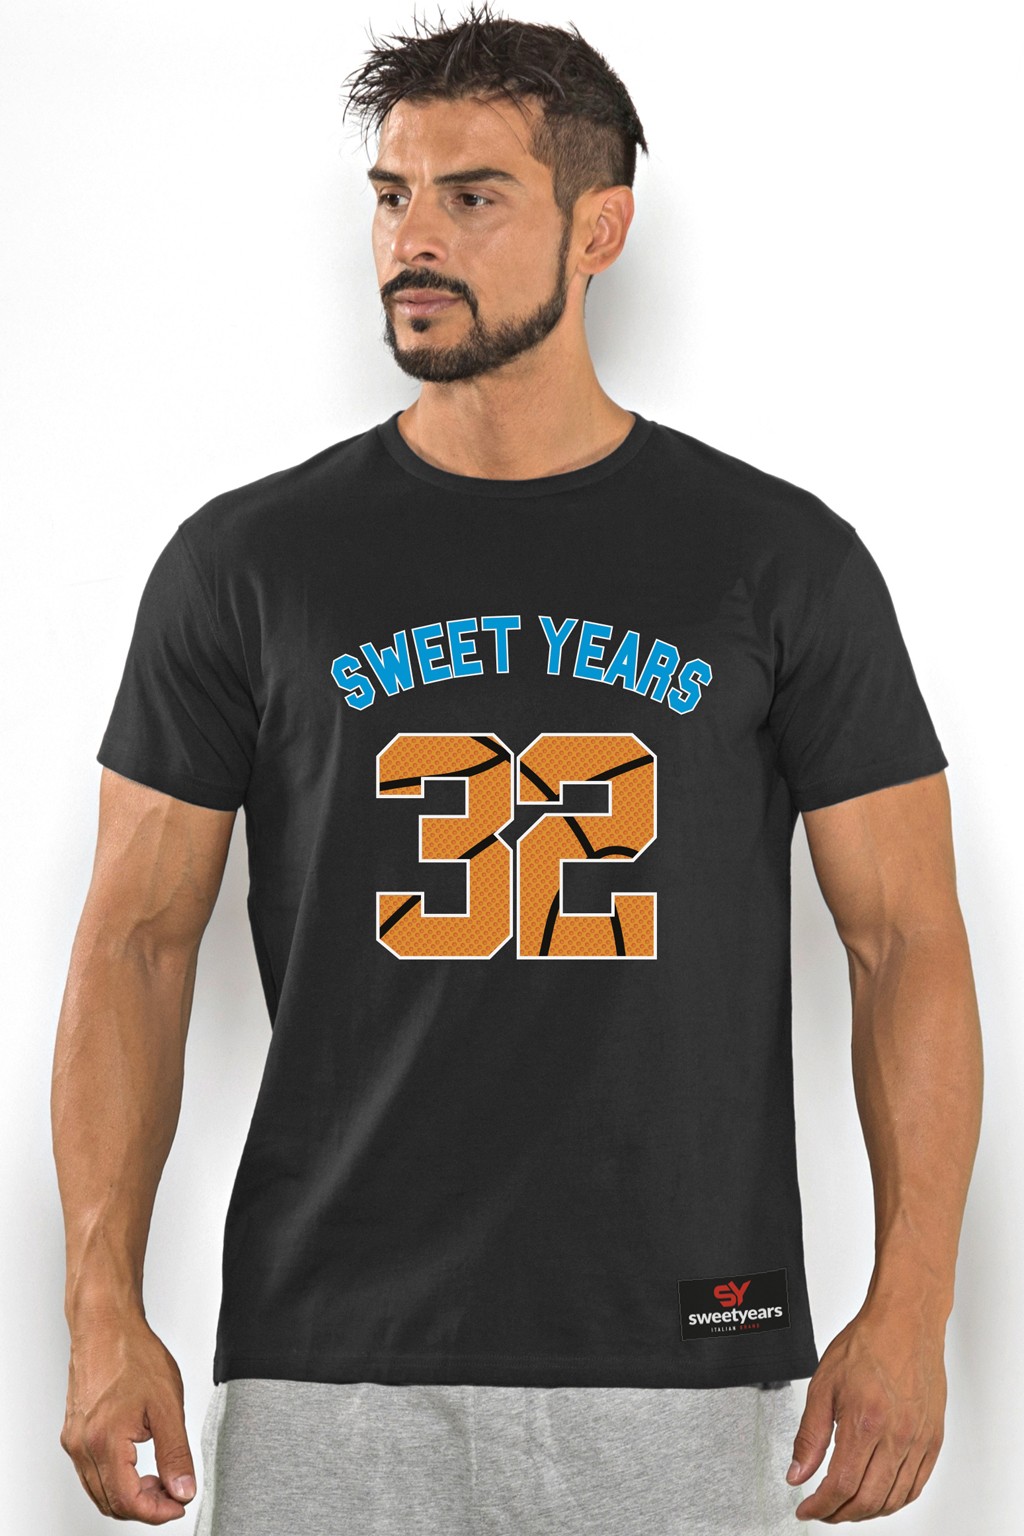 Acquista subito questa t-shirt Sweet Years da uomo in cotone girocollo tinta unita con stampa scritta sul petto.